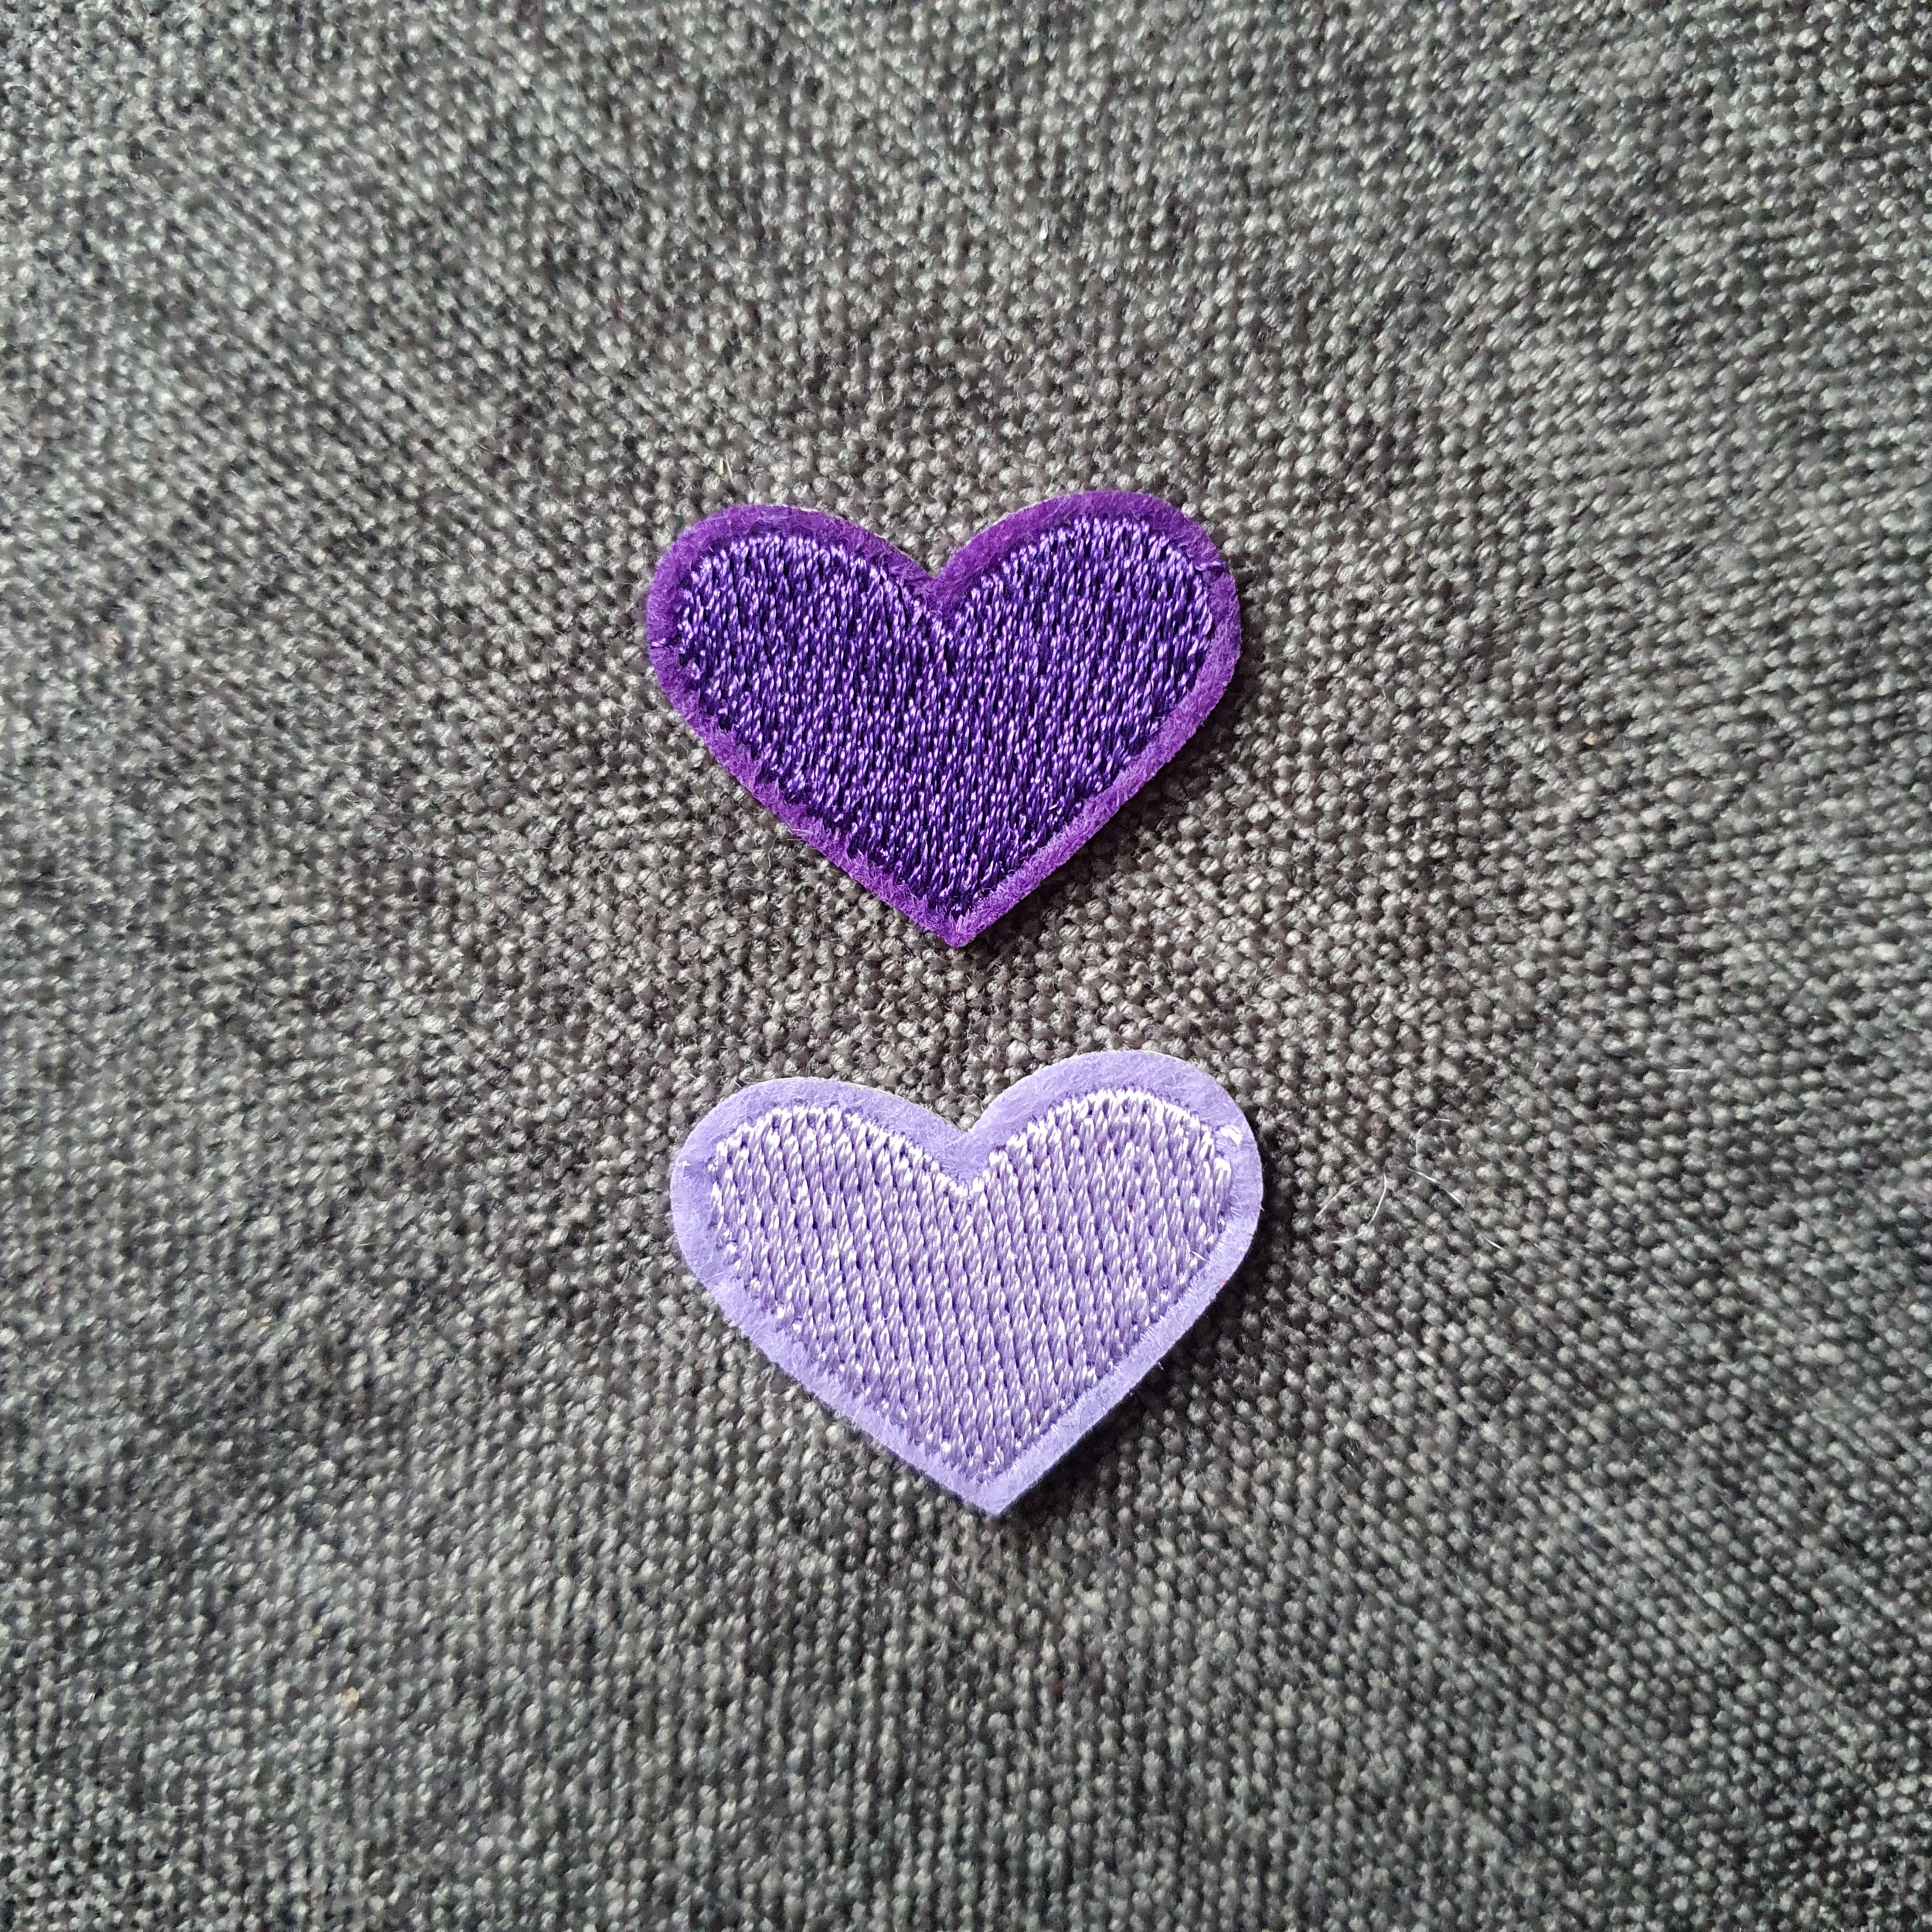 Patch thermocollant duo de petits cœurs colorés violet et mauve